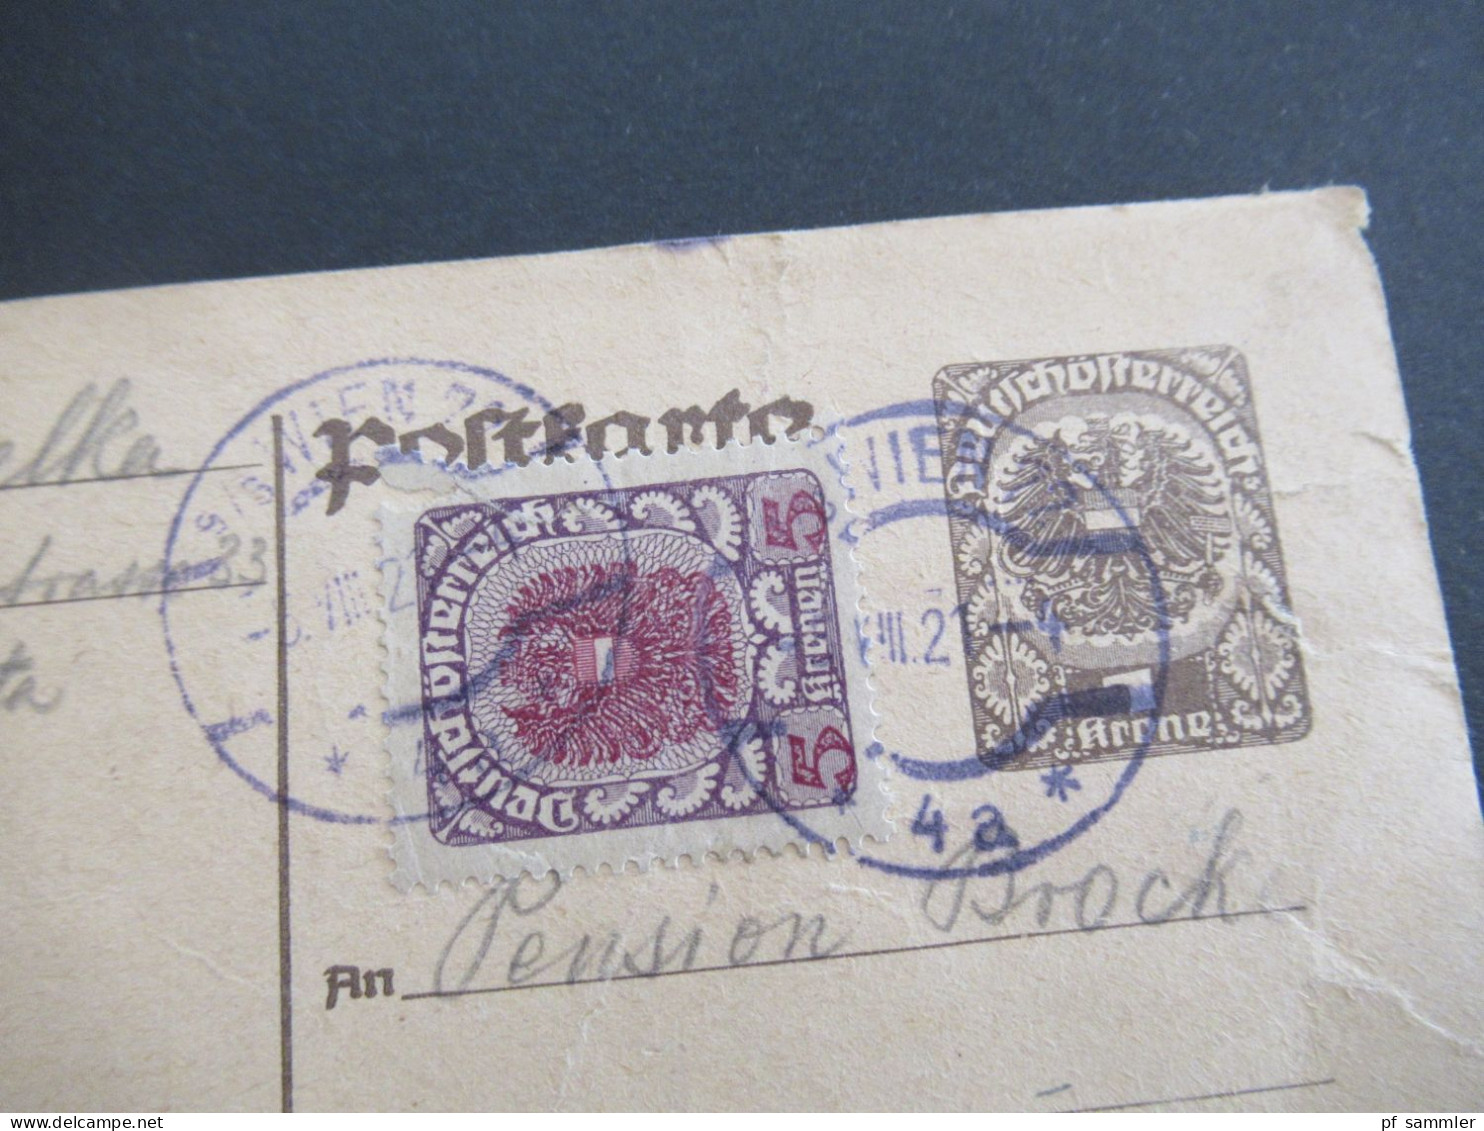 Österreich 1921 Deutschösterreich 1 Krone Mit Zusatzfrankatur 5 Kronen Auslands PK Wien - Berlin - Postcards